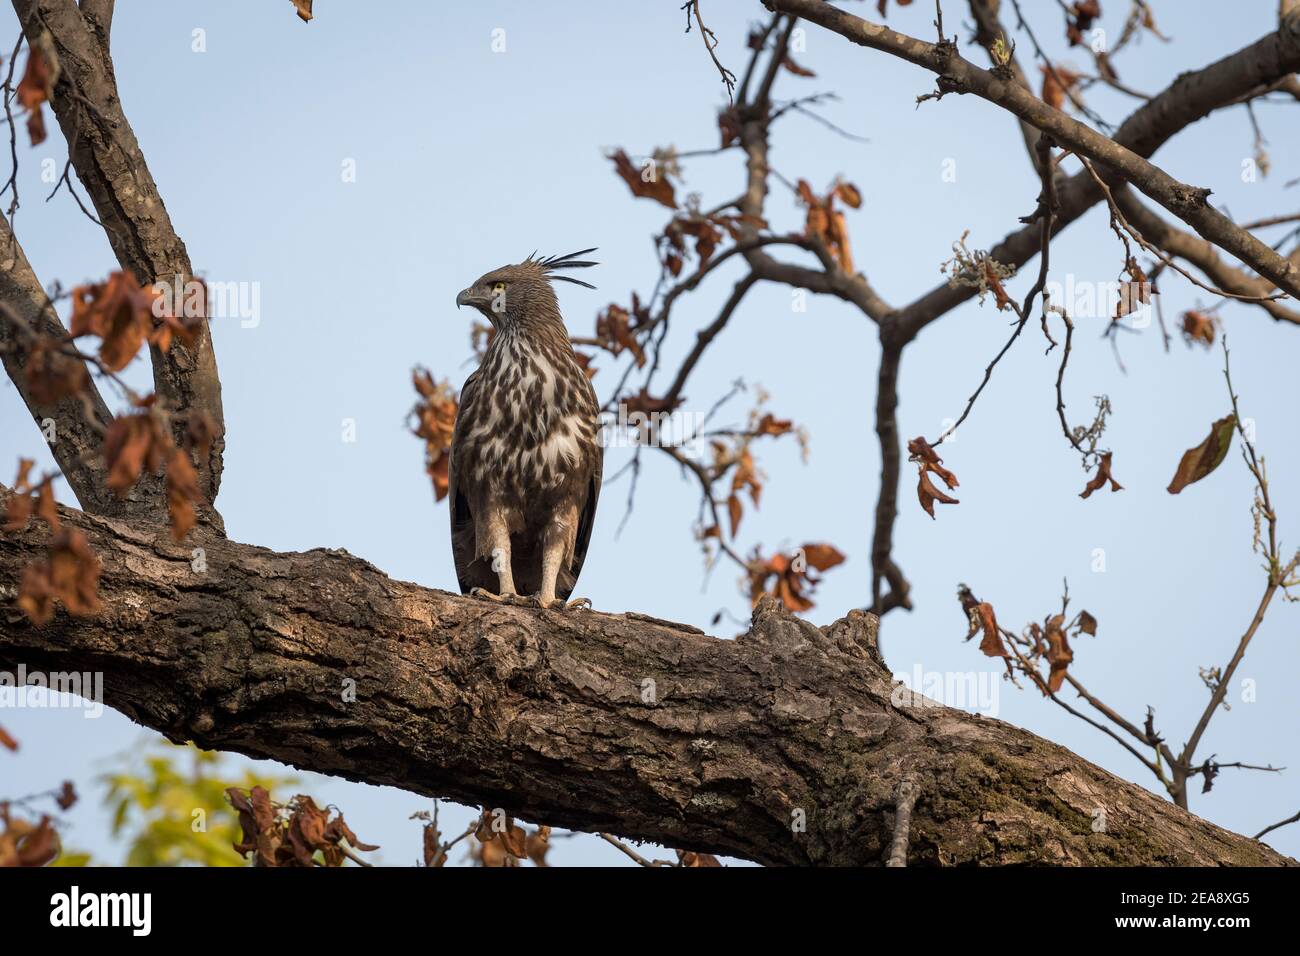 retrato de águila halcón cambiable o crestada encaramado en tronco de árbol en el parque nacional bandhavgarh o reserva de tigre madhya pradesh india nisaetus cirrhatus Foto de stock